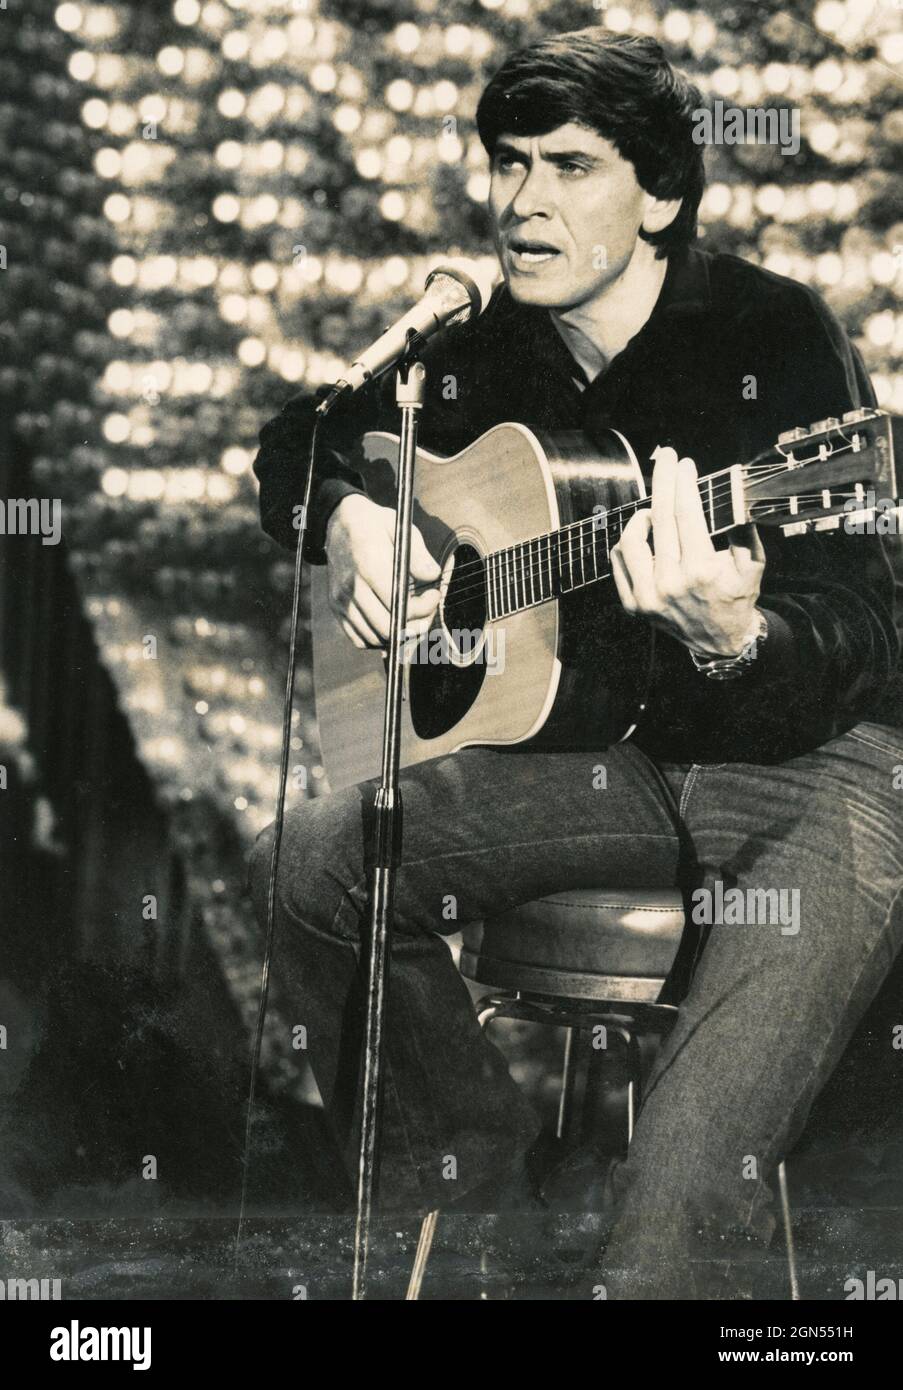 El cantante italiano Gianni Morandi tocando la guitarra en un concierto,  1970s Fotografía de stock - Alamy